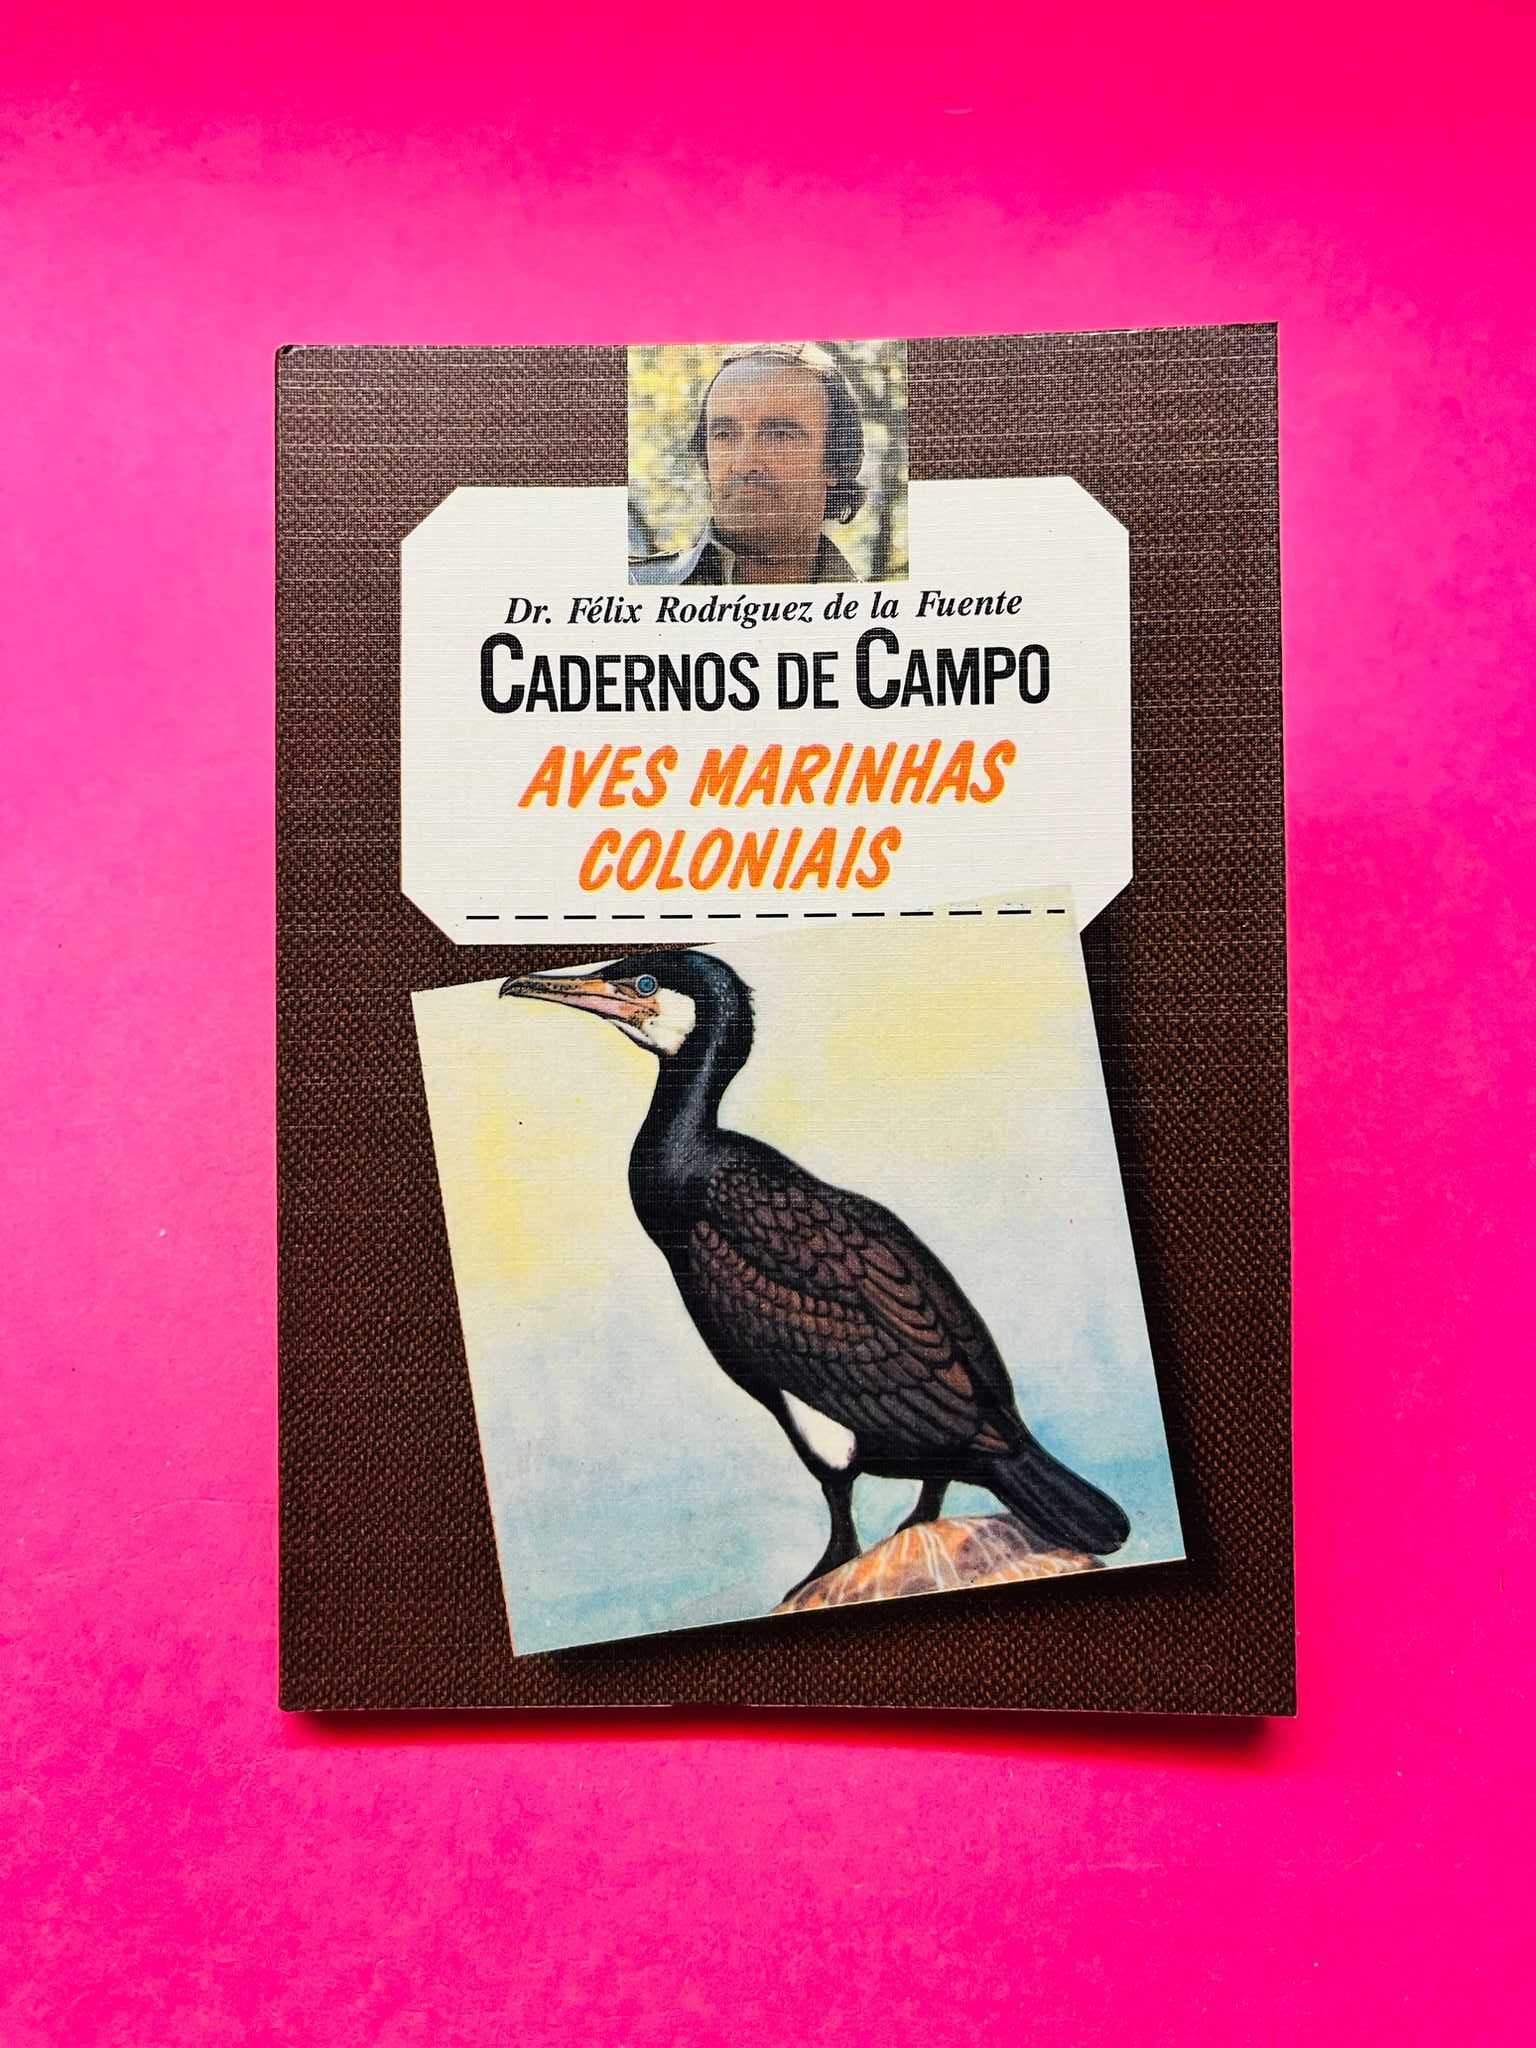 Cadernos de Campo - Aves Marinhas Coloniais - Félix de la Fuente